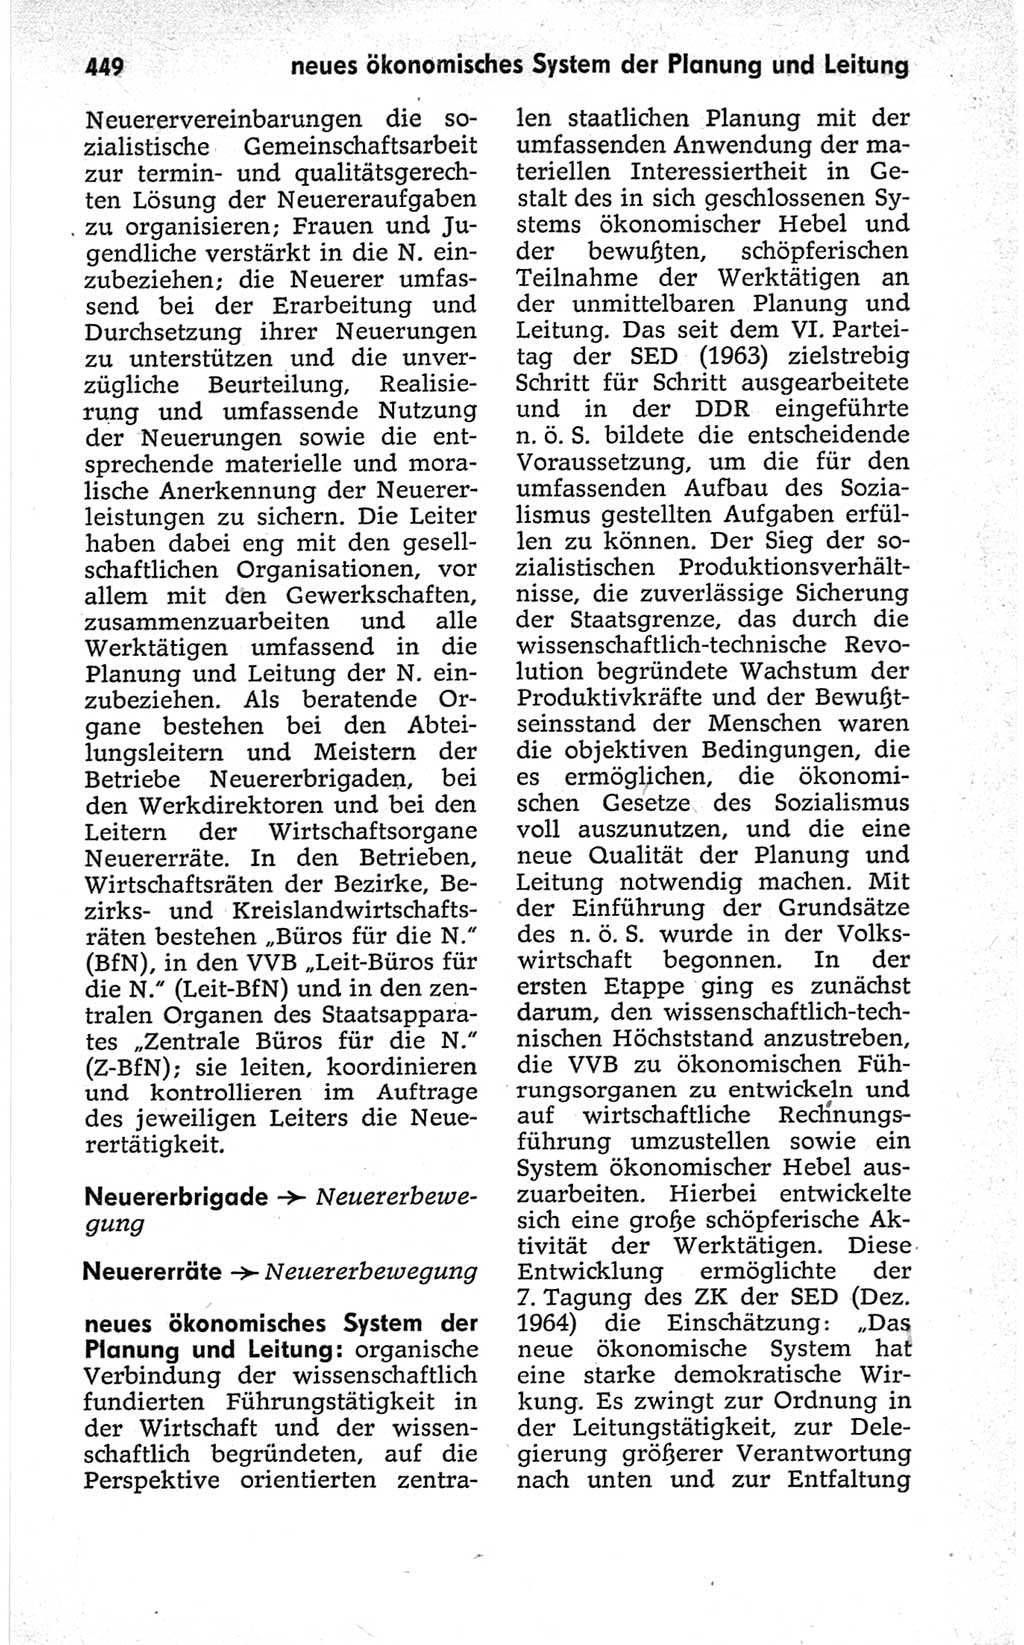 Kleines politisches Wörterbuch [Deutsche Demokratische Republik (DDR)] 1967, Seite 449 (Kl. pol. Wb. DDR 1967, S. 449)